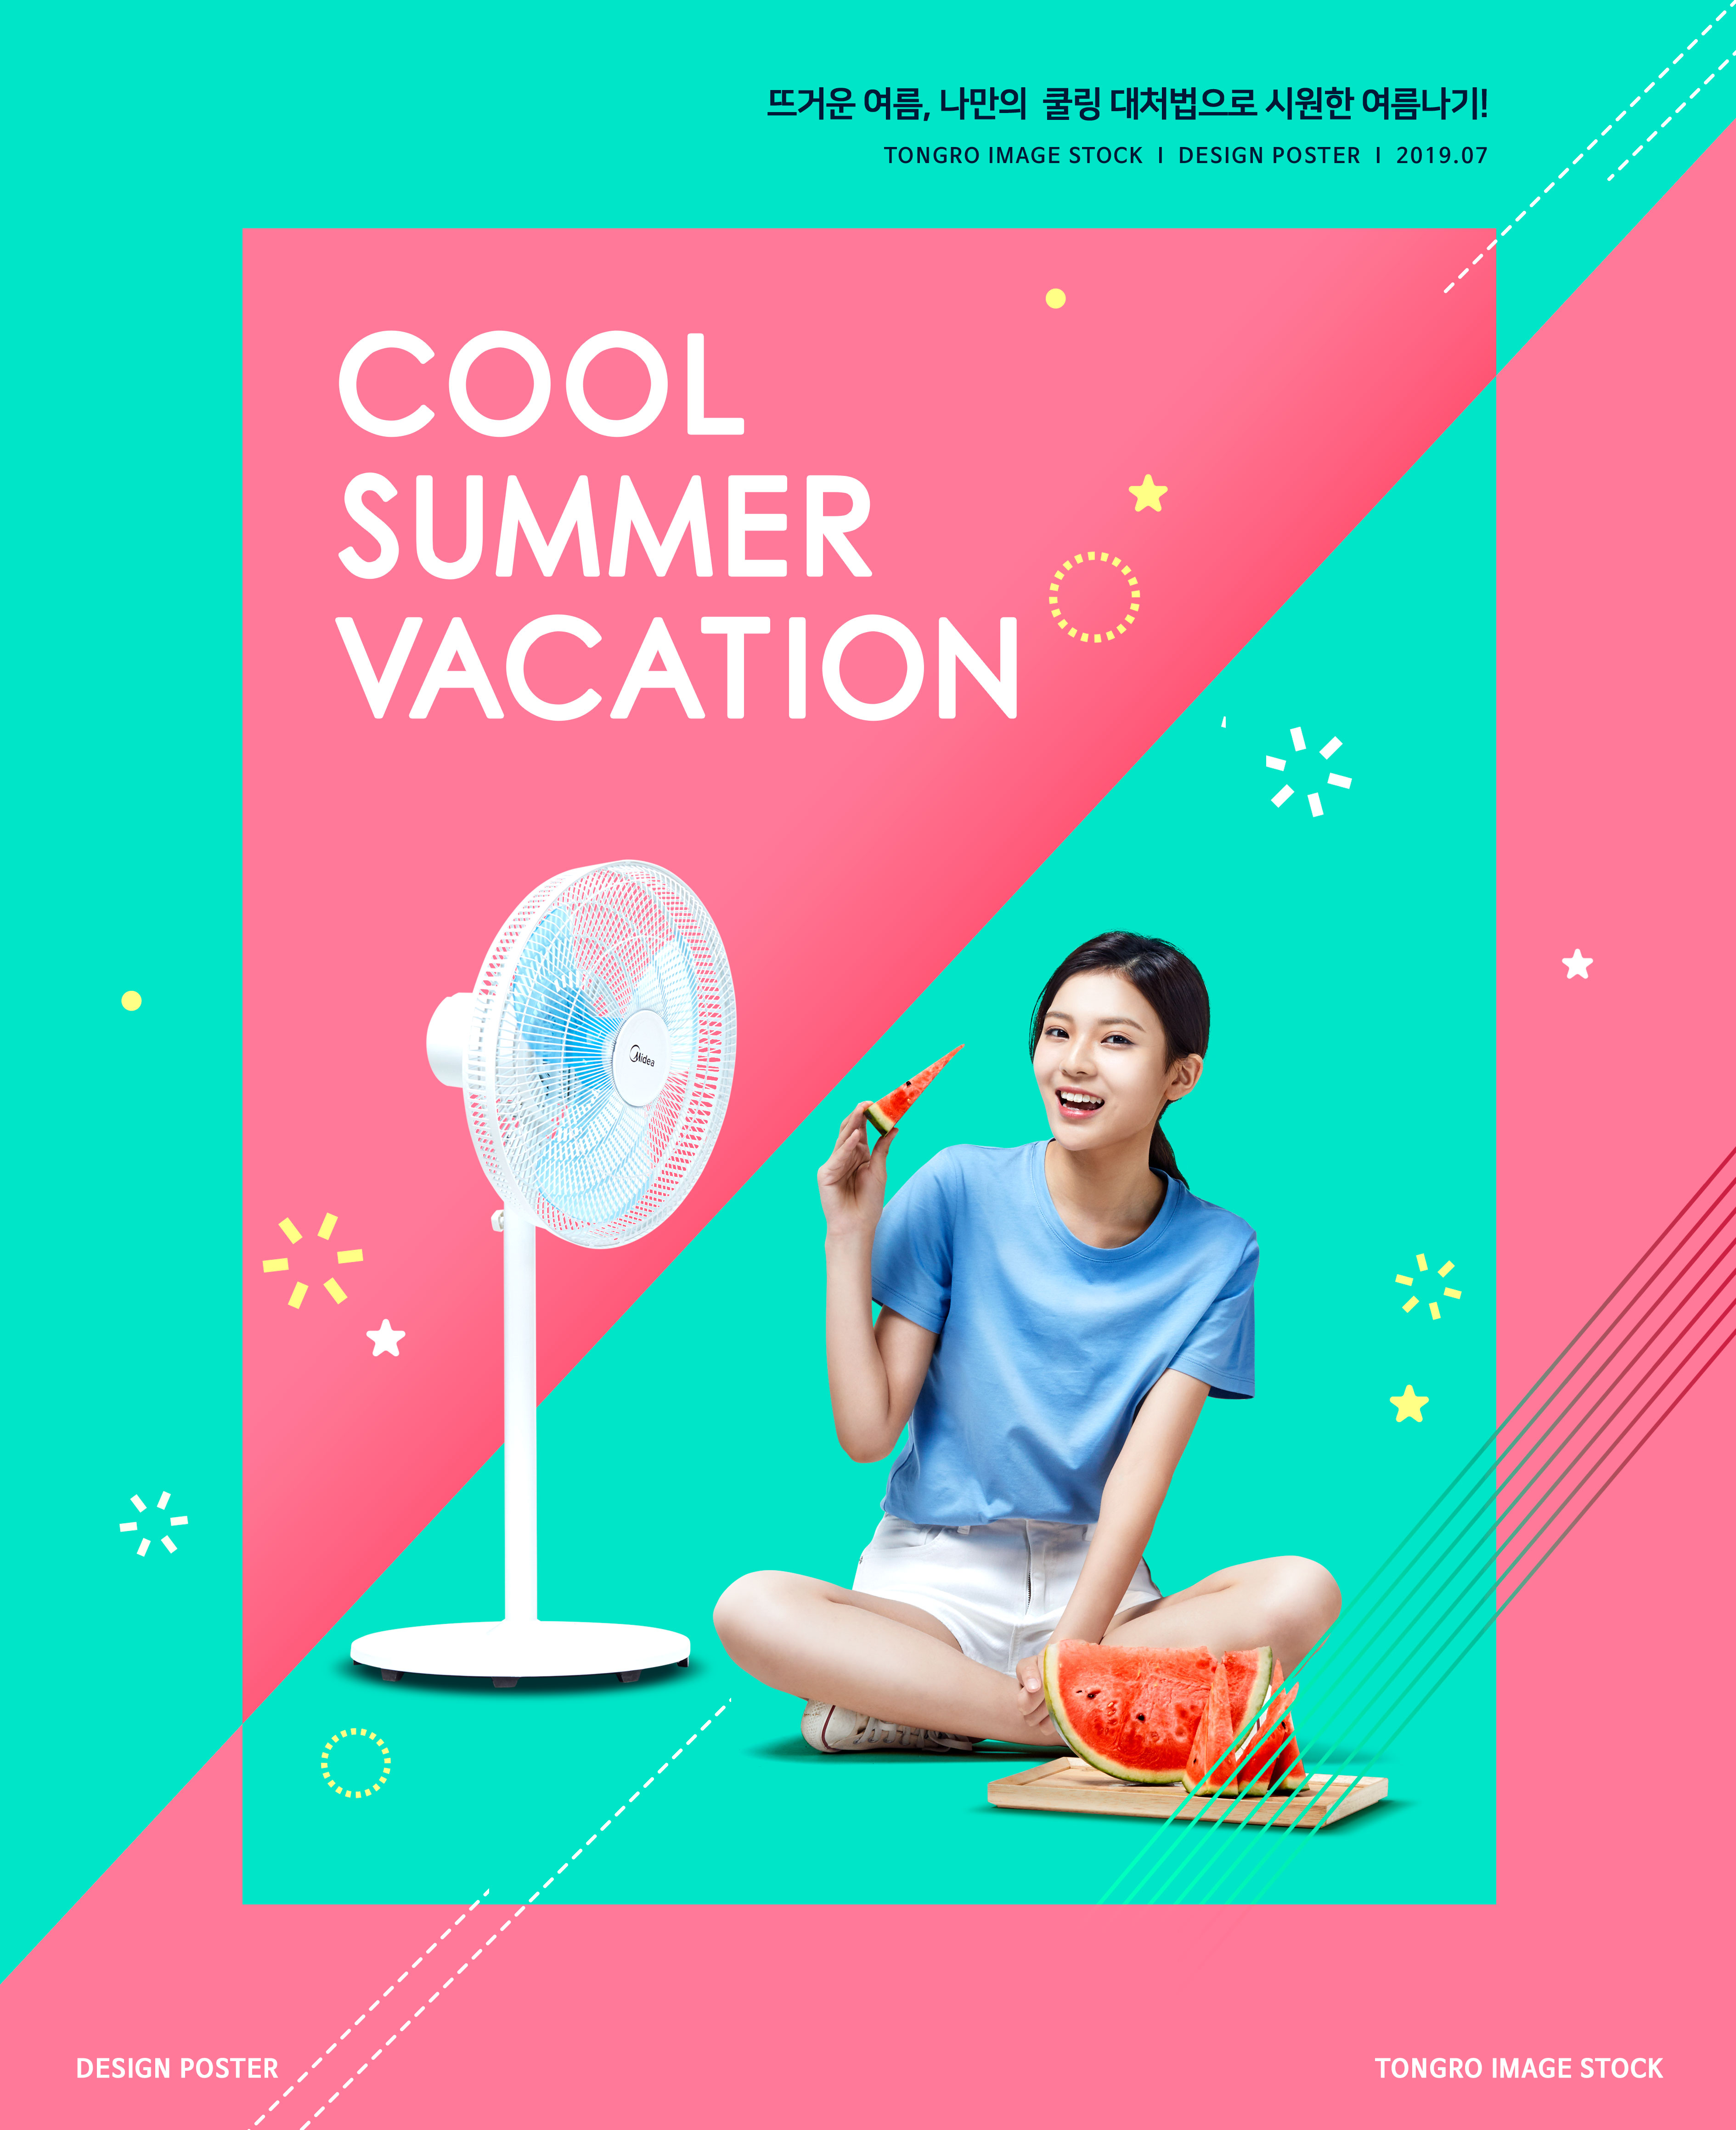 清凉夏季降暑主题海报设计模板[PSD]插图(1)